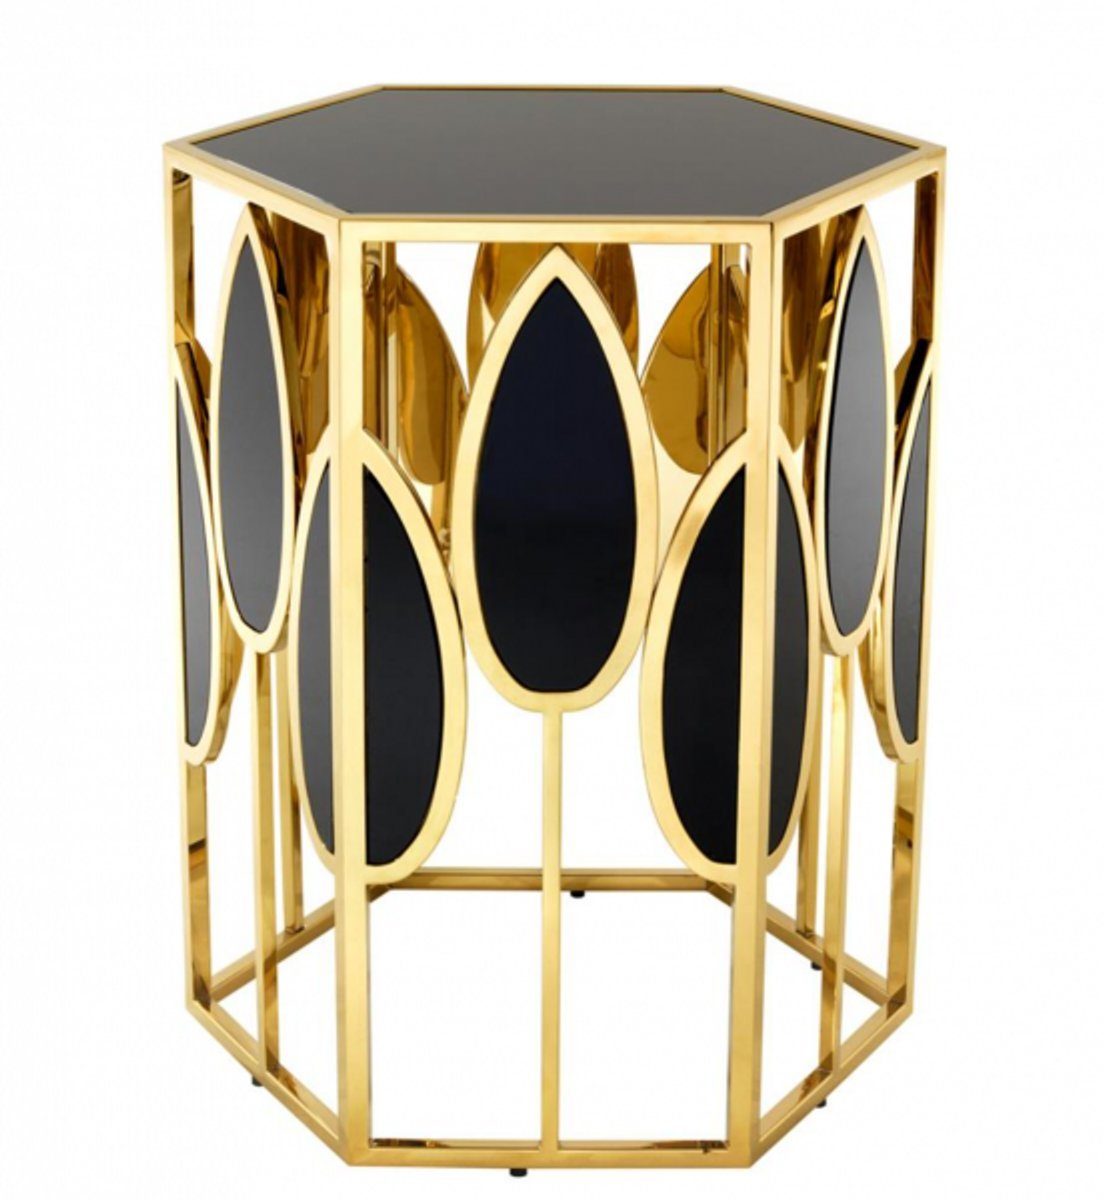 Casa Padrino Beistelltisch Luxus Art Deco Designer Beistelltisch Gold mit schwarzem Glas - Luxus Beistelltisch